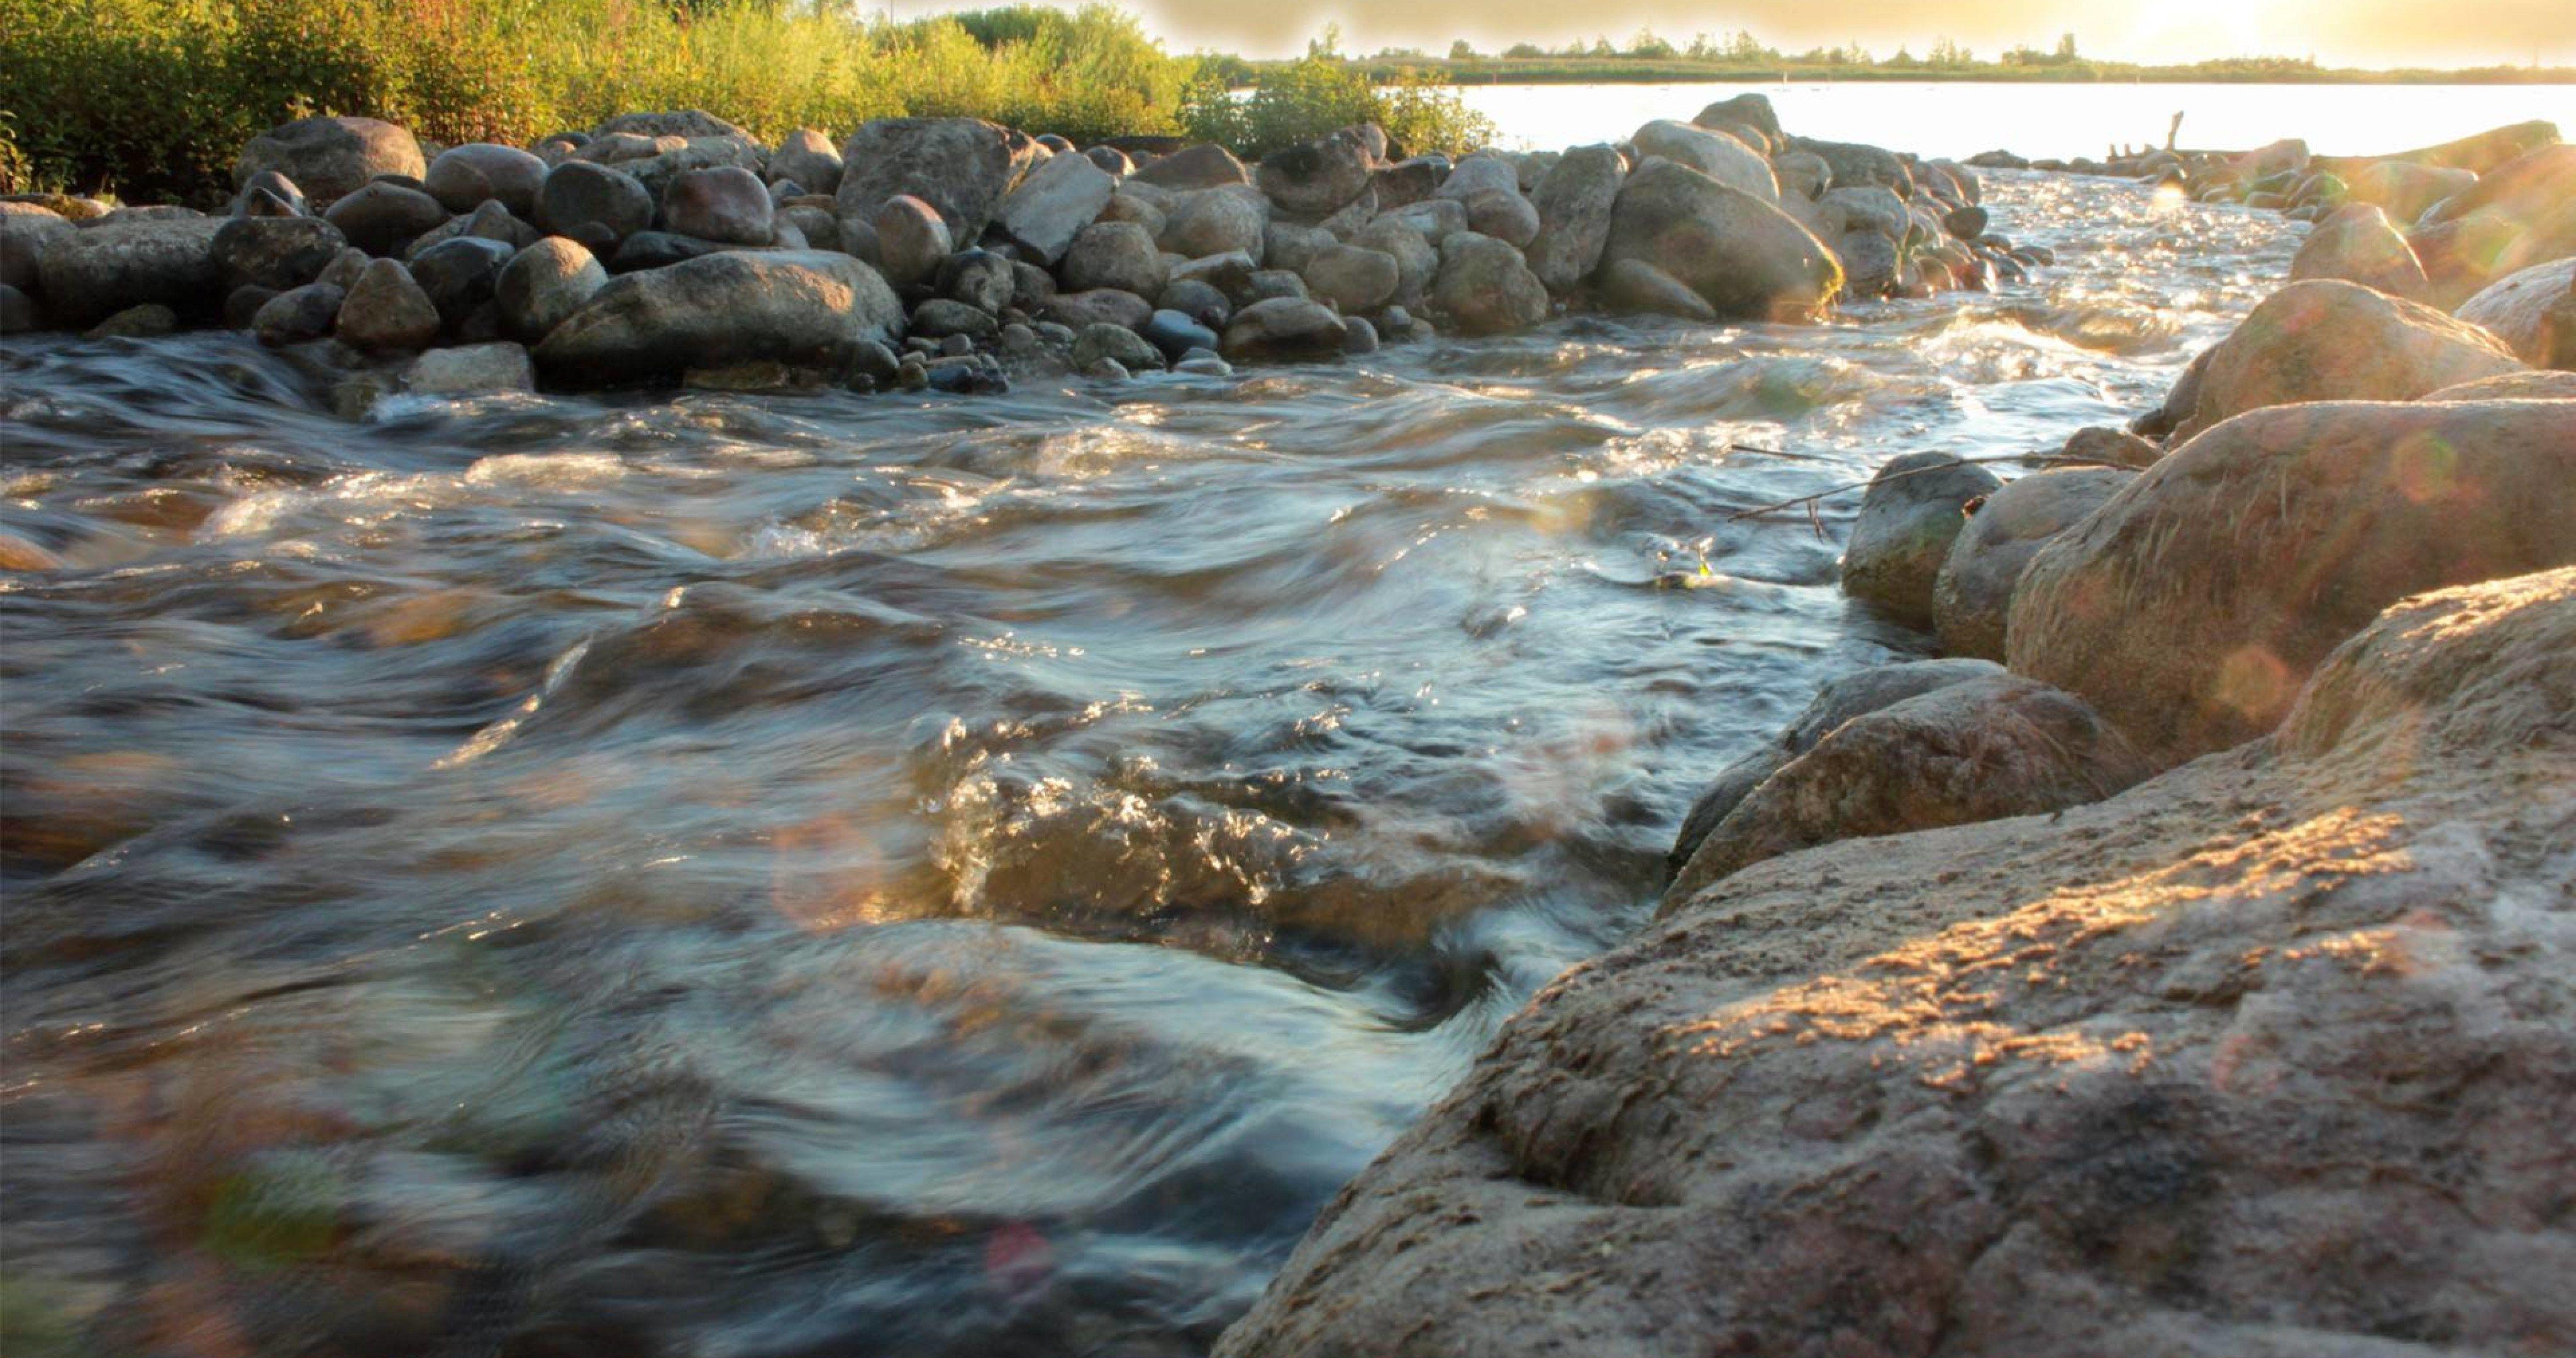 Камень из бегущей воды. Вода река. Ручей с камнями. Каменистый берег реки. Камни в реке.